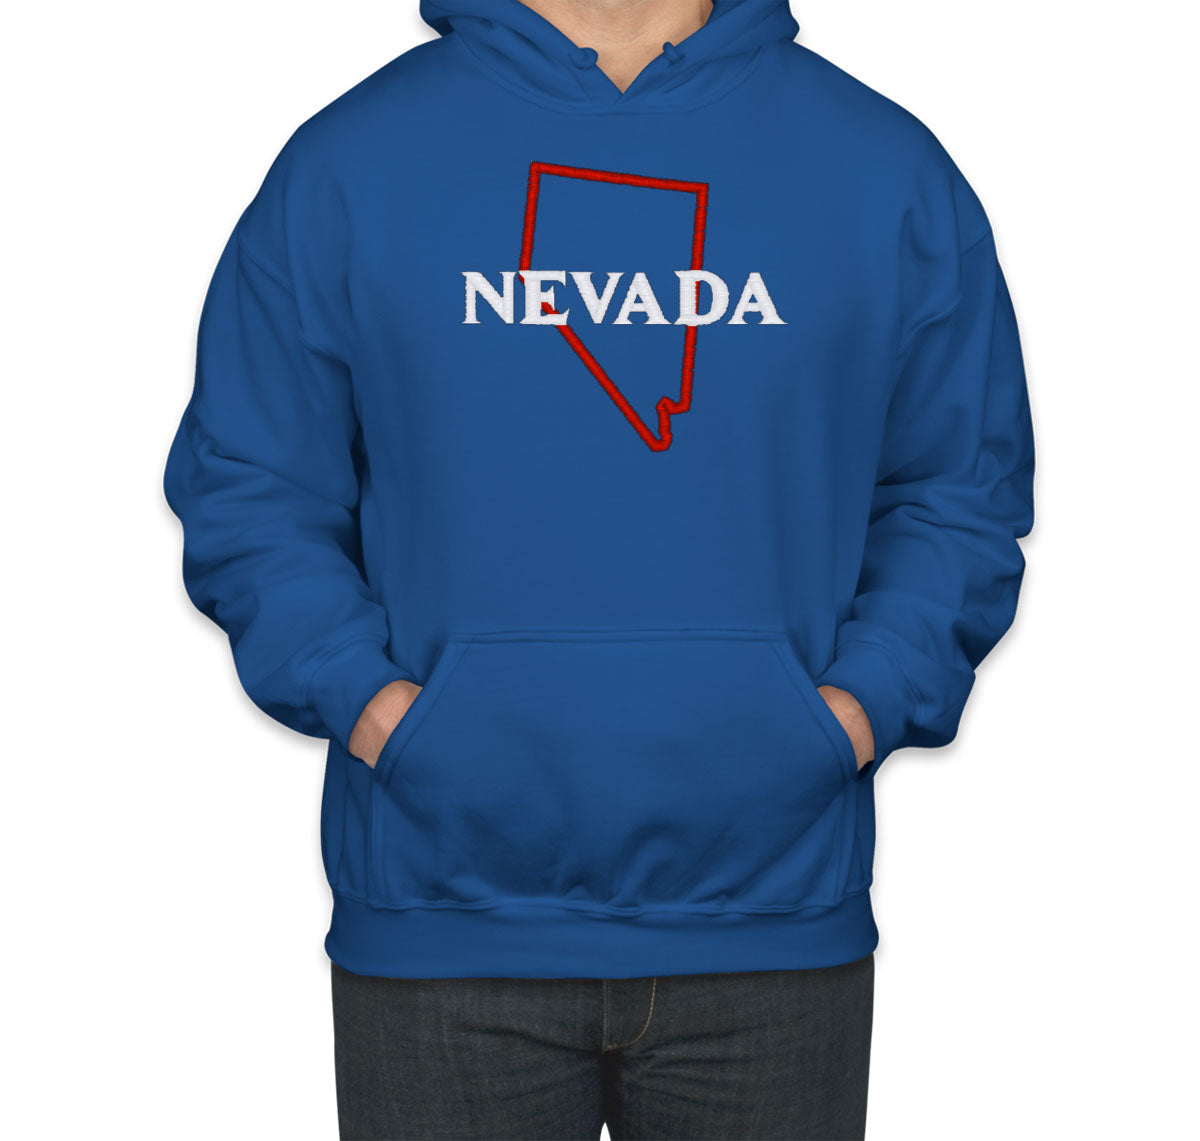 Nevada Embroidered Unisex Hoodie